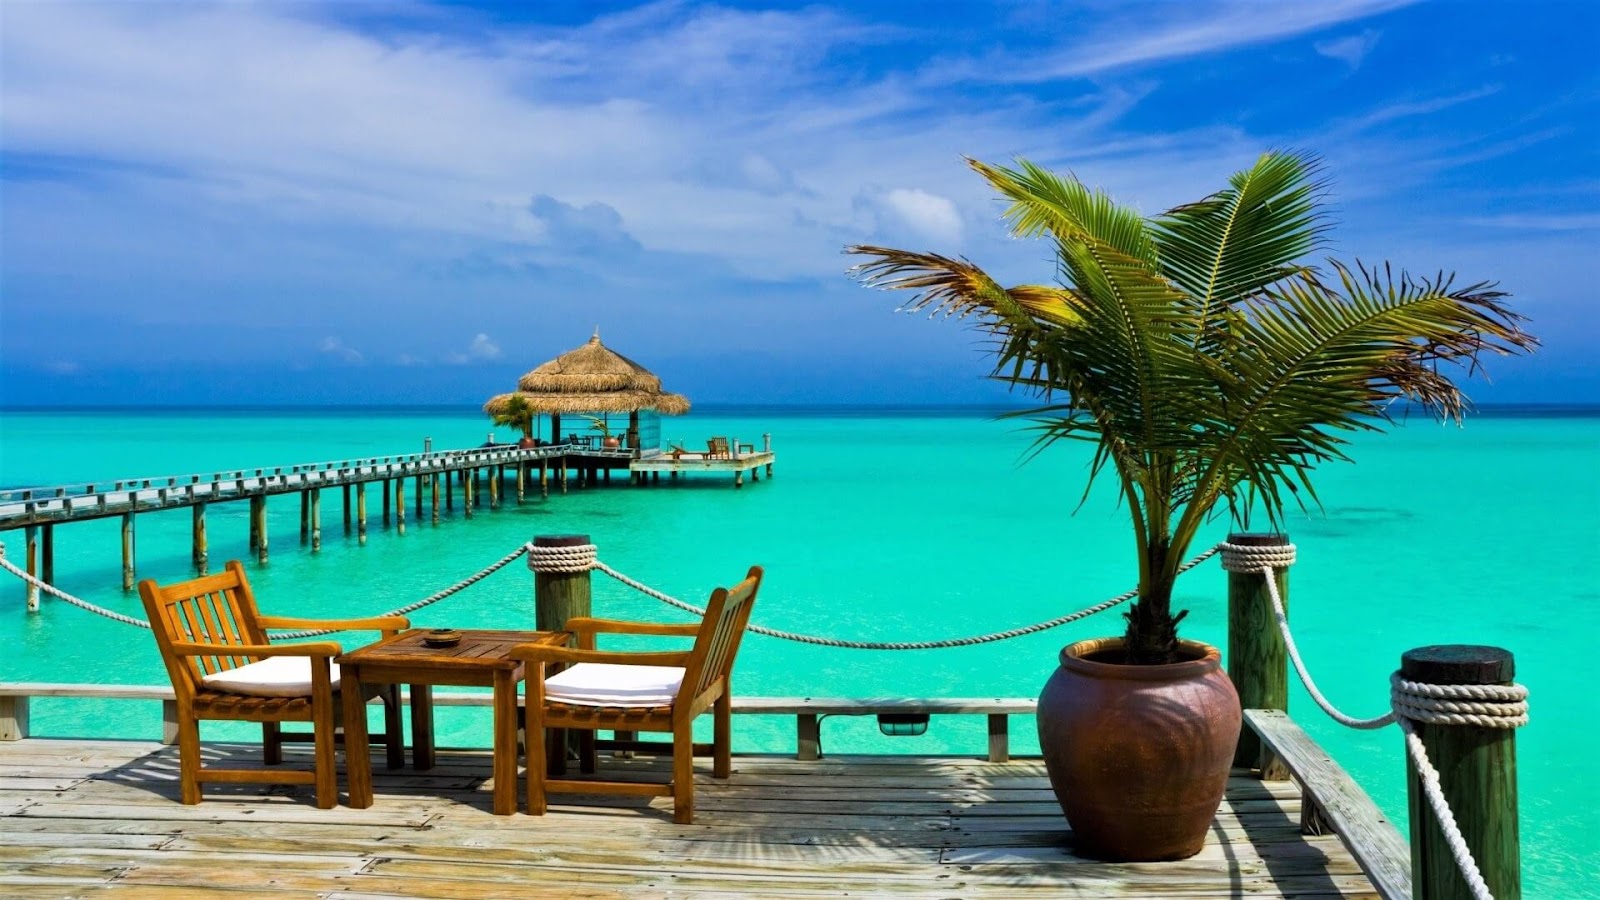 Bộ ảnh hình nền phong cảnh Resort trên biển đẹp và thơ mộng nhất